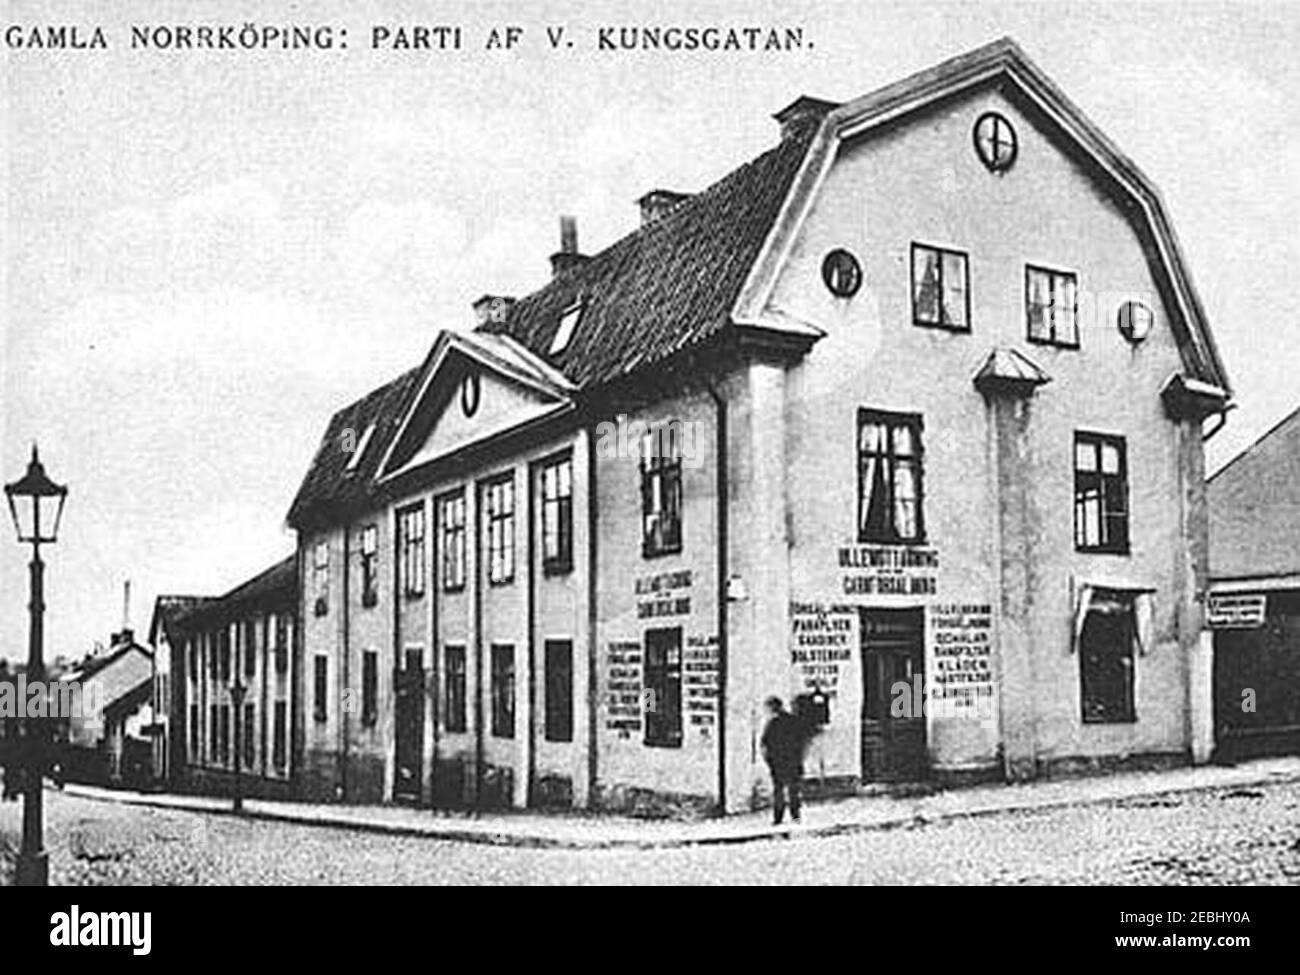 Norrköping, Västra Kungsgatan i början av 1900-talet. Stock Photo